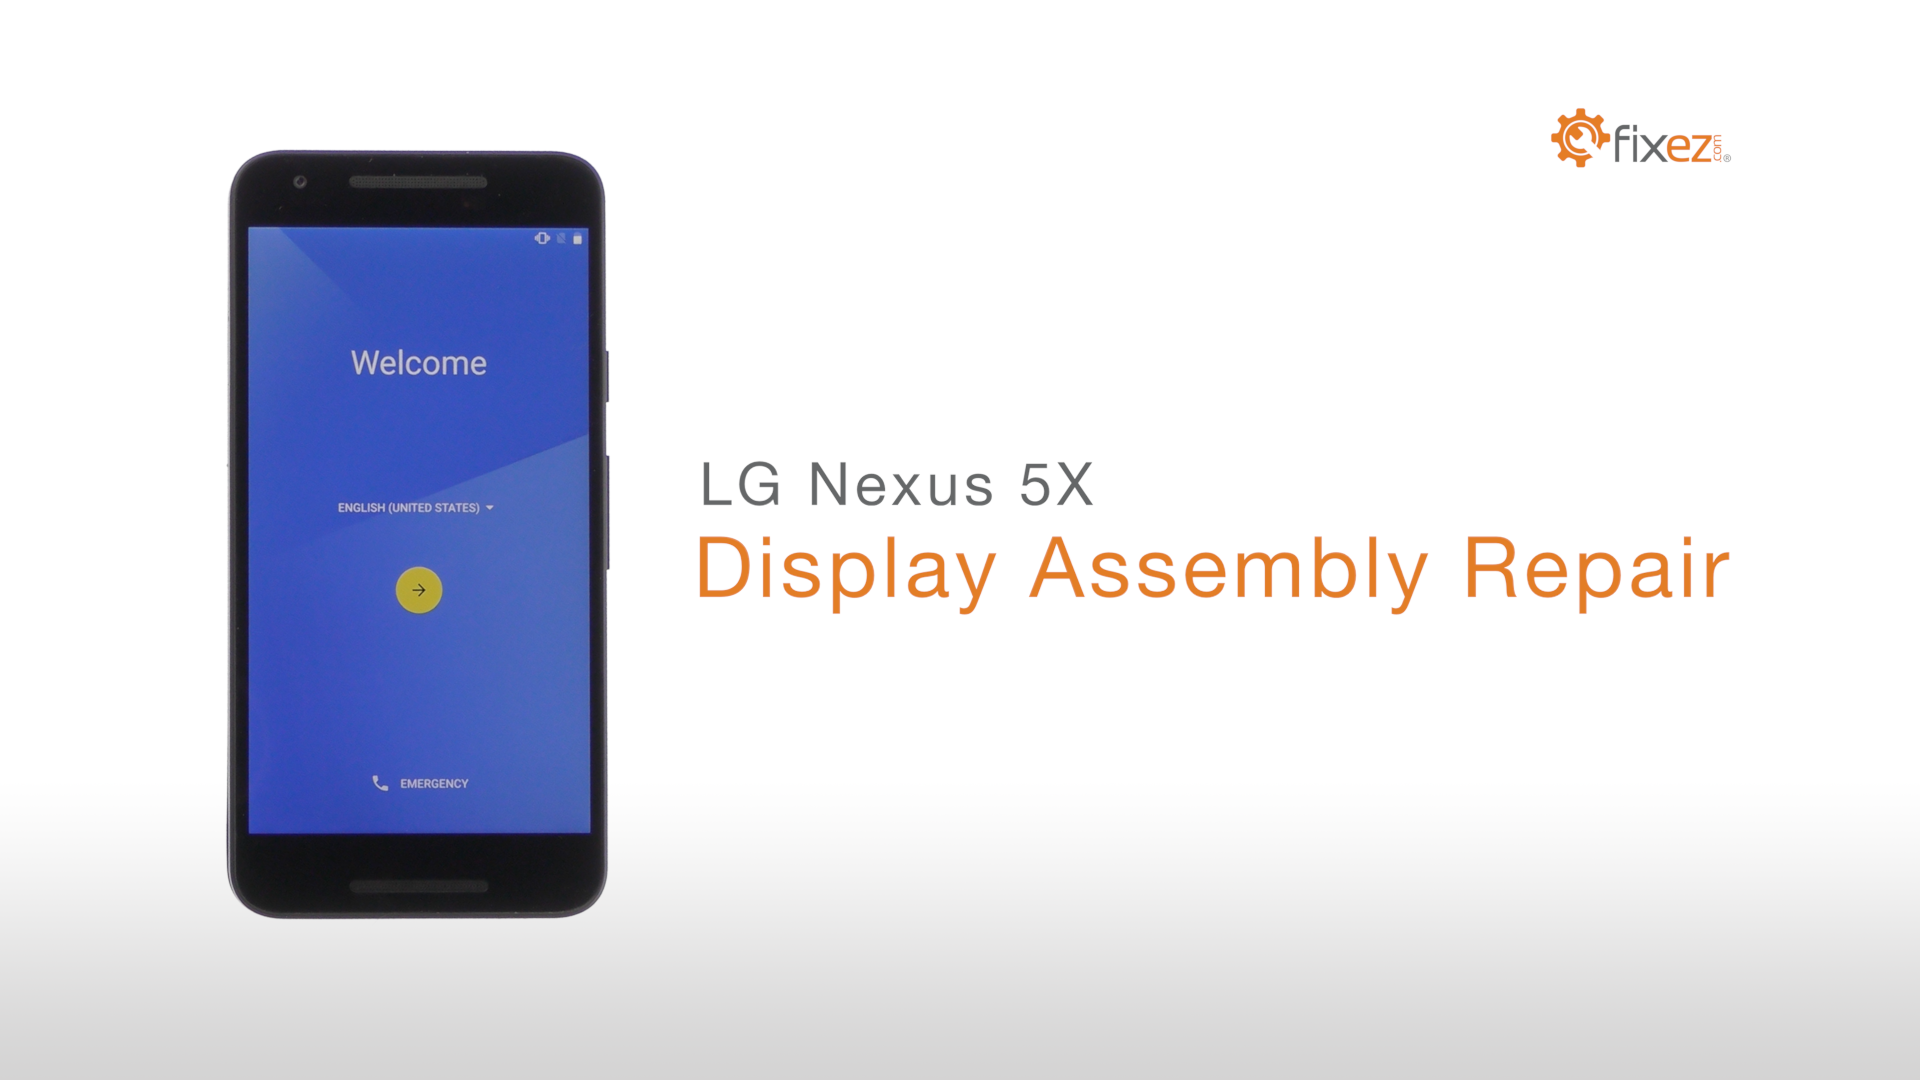 LG Nexus 5X Display Assembly Repair